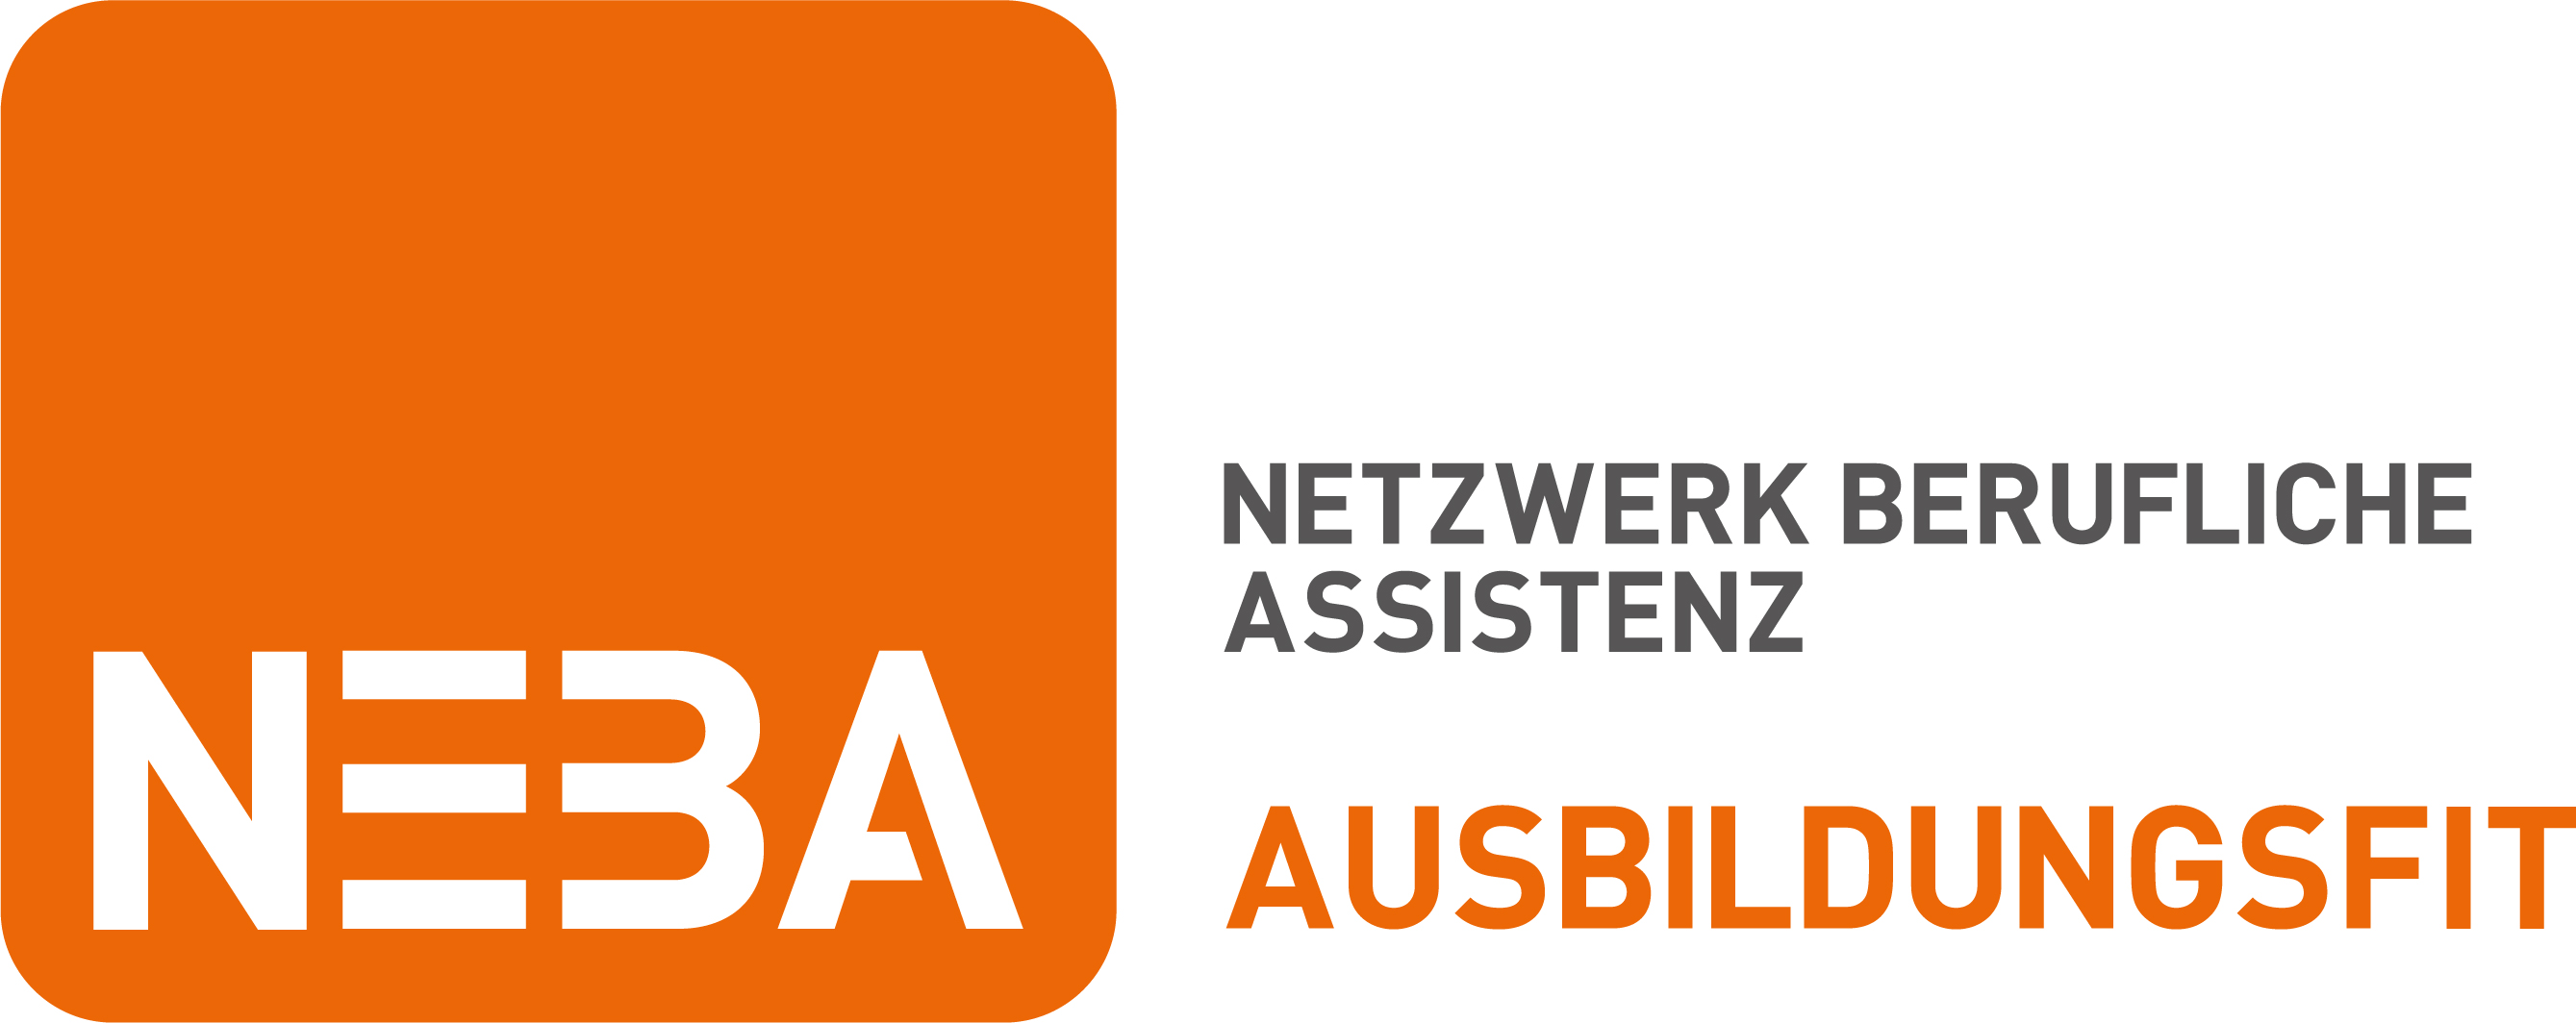 NEBA - Netzwerk berufliche Assistenz